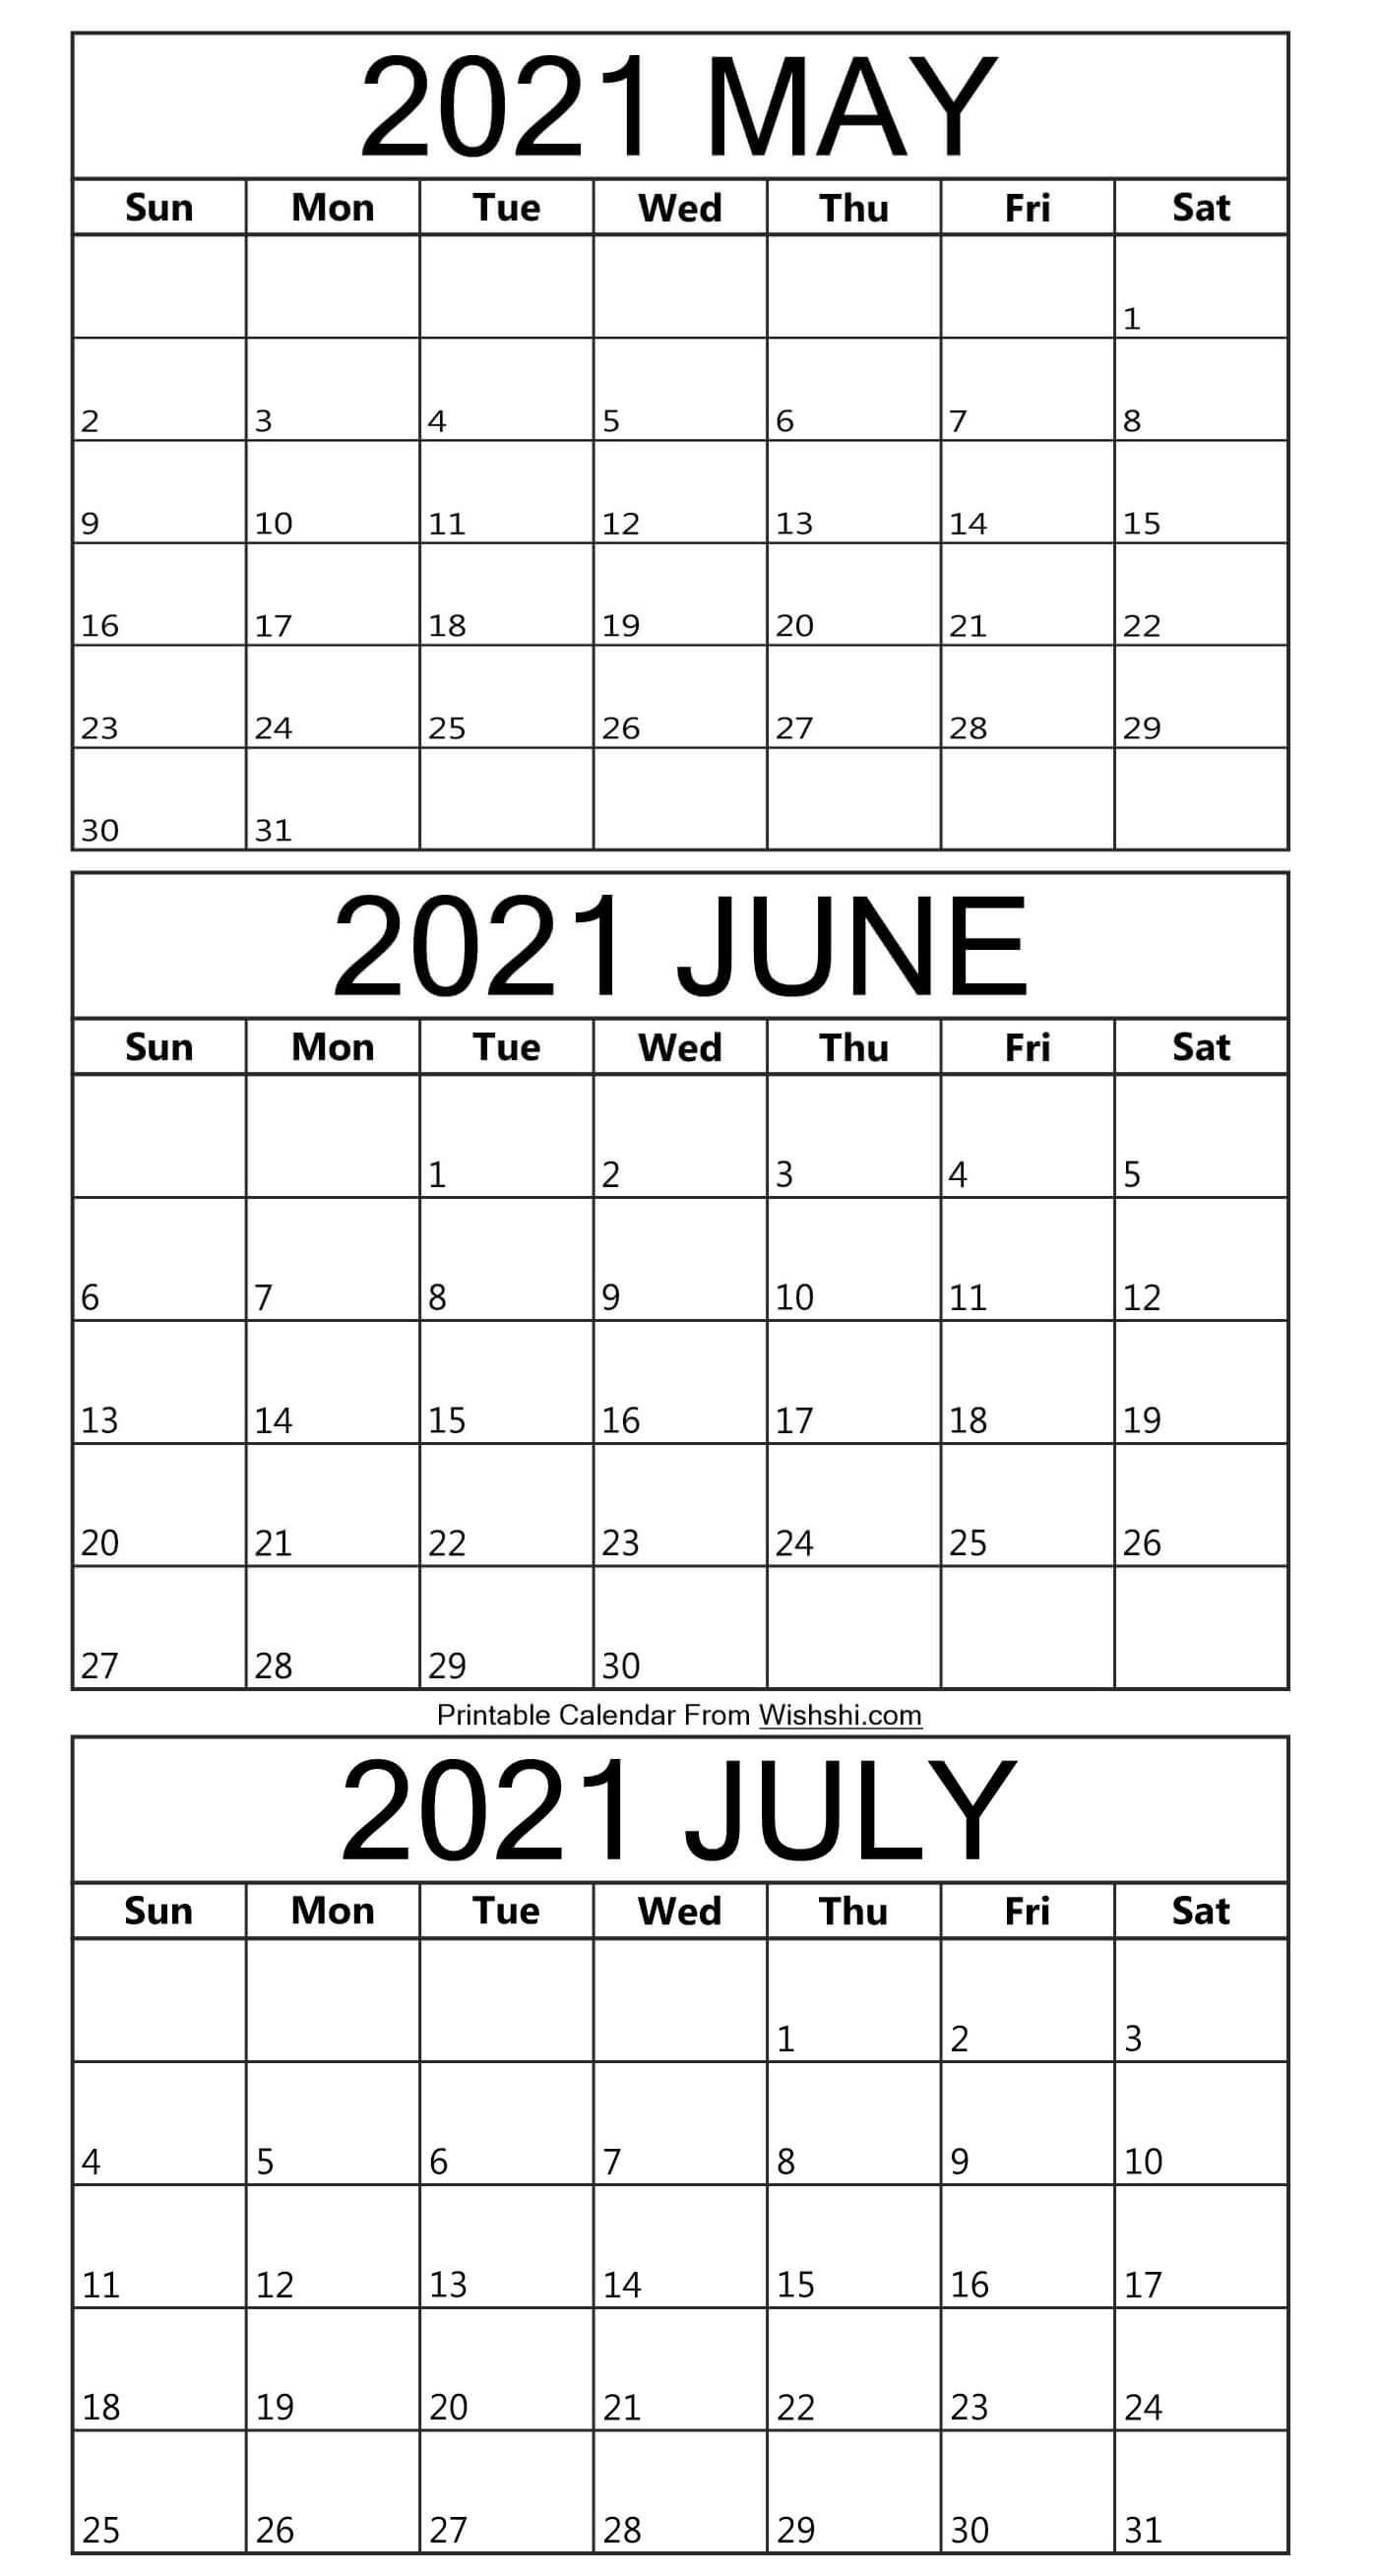 Printable May To July 2021 Calendar - Free Printable Calendars Printable May To July 2021 Calendar May-July 2021 Calendar